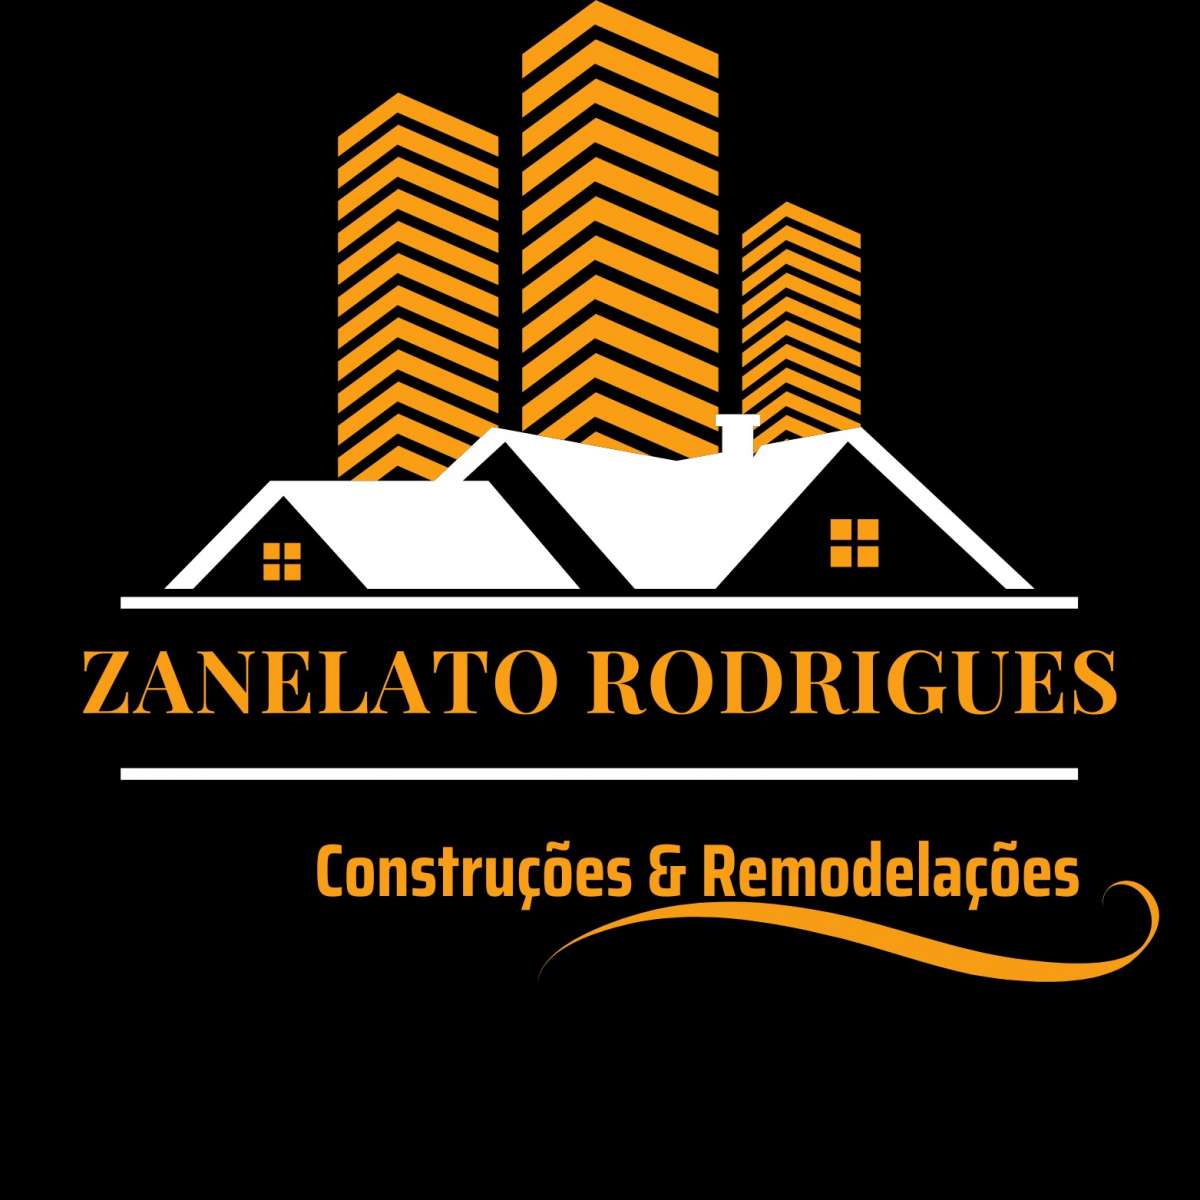 Zanelato Rodrigues construção e remodelação - Vila Franca de Xira - Calafetagem